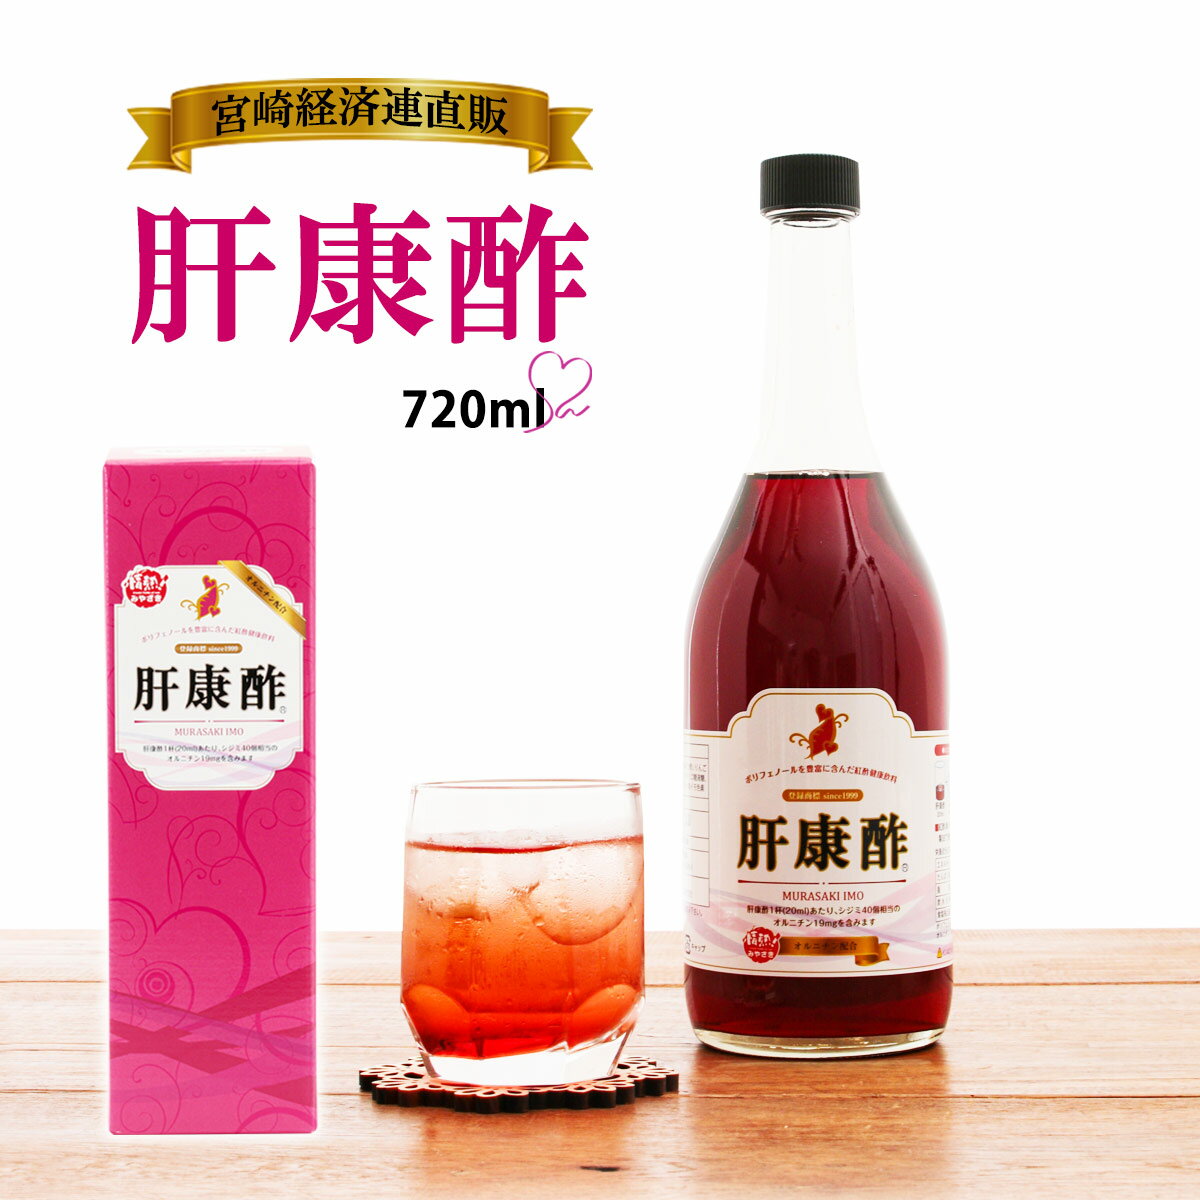  肝康酢 720ml /お酢ドリンク/酢/ポリフェノール/健康ドリンク/紅酢/健康/オルニチン/紫イモ